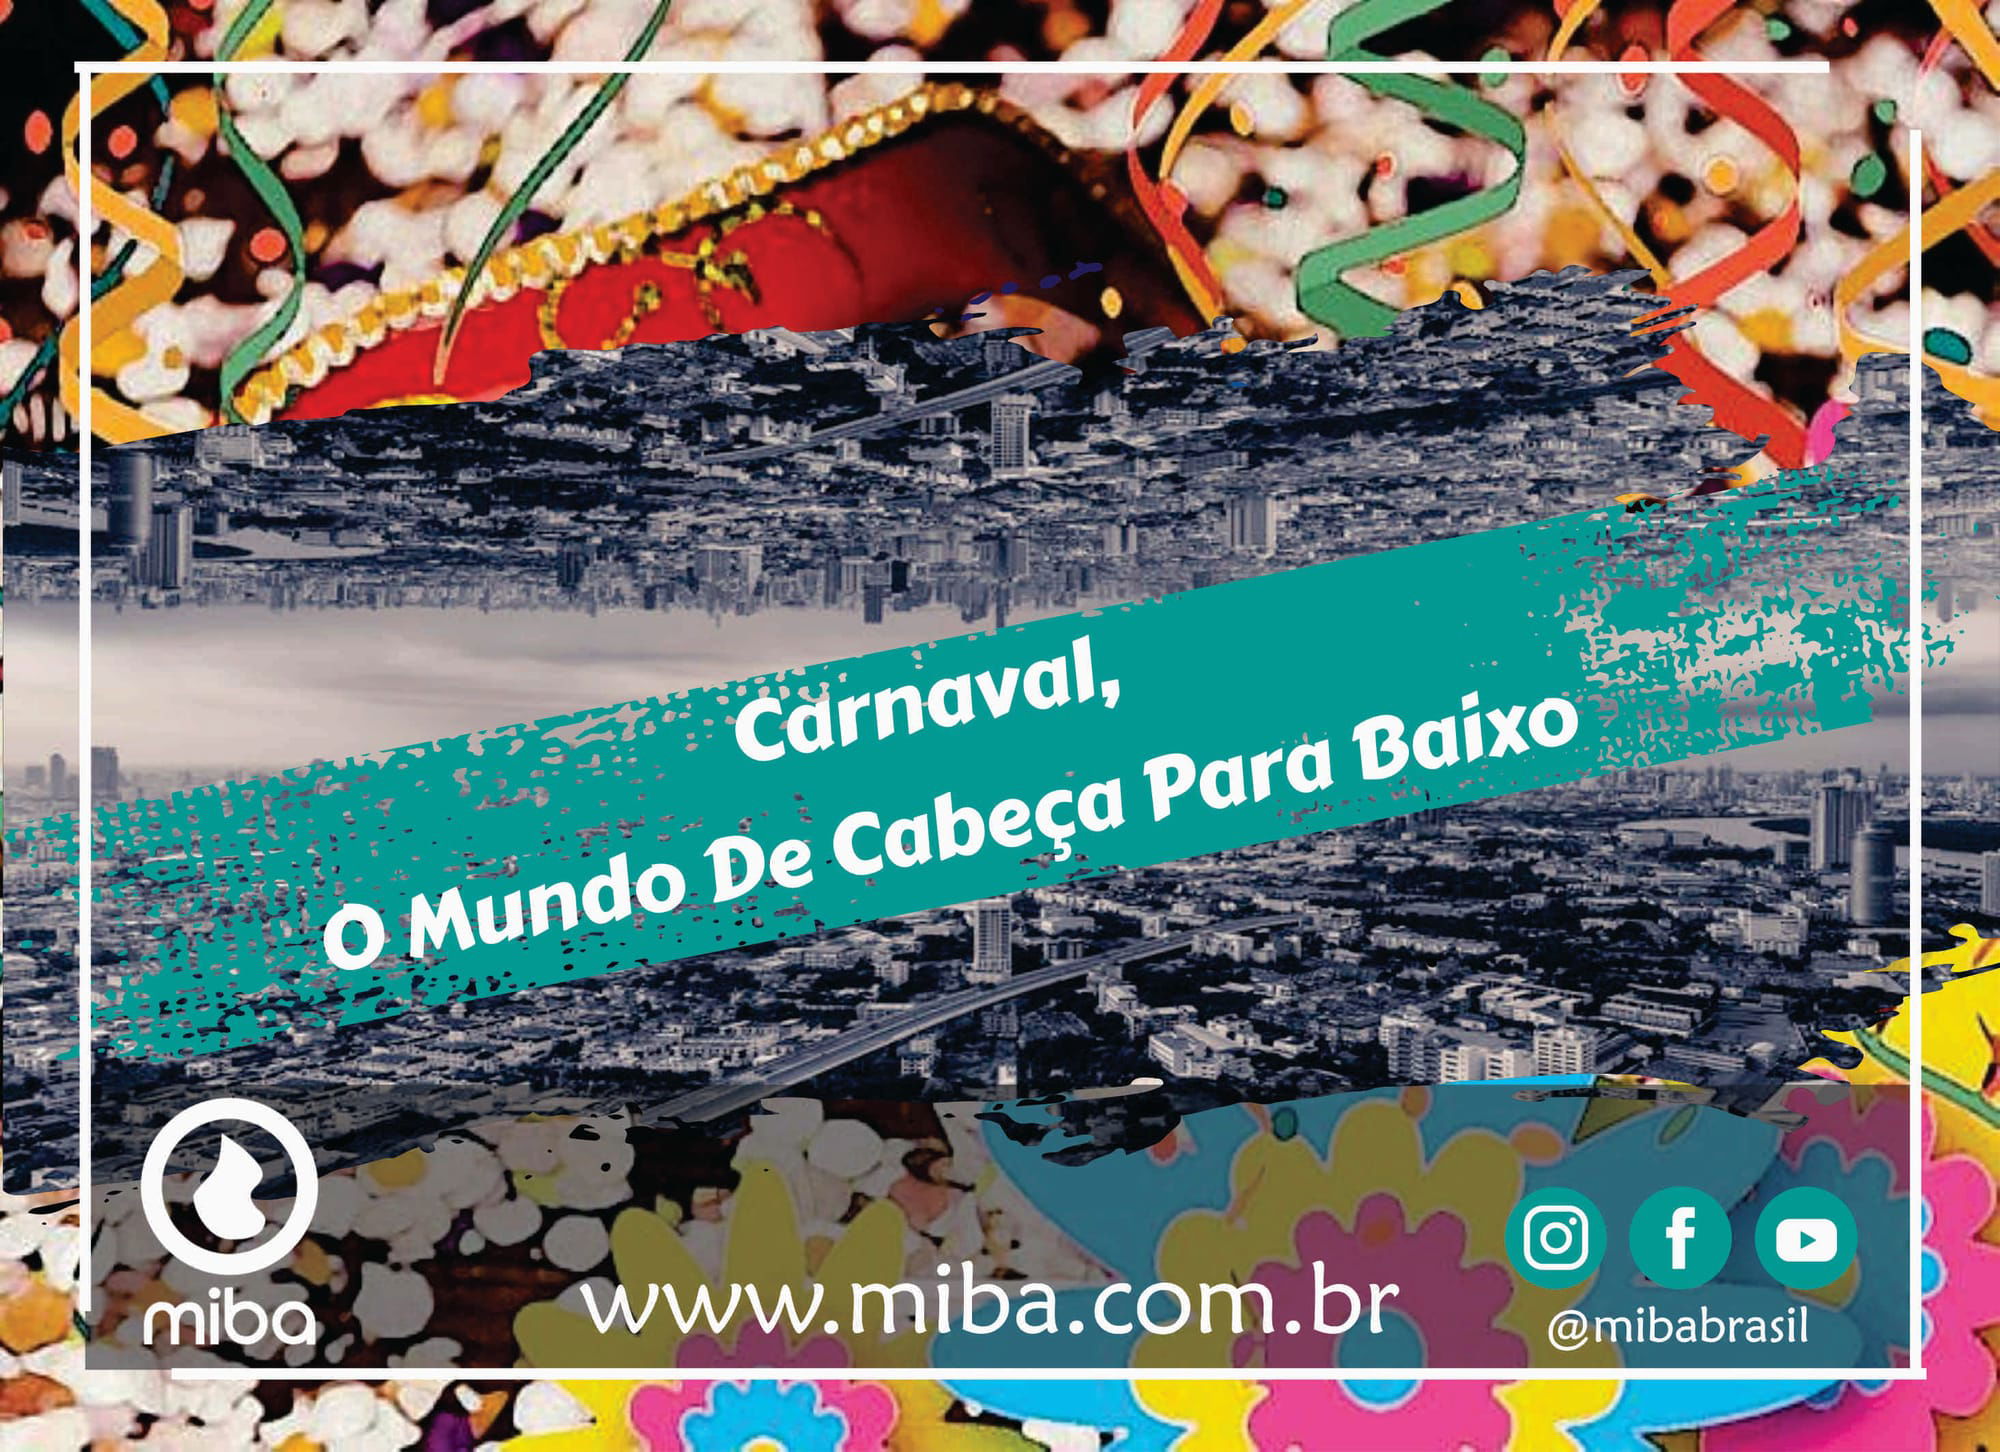 Carnaval, O Mundo De Cabeça Para Baixo